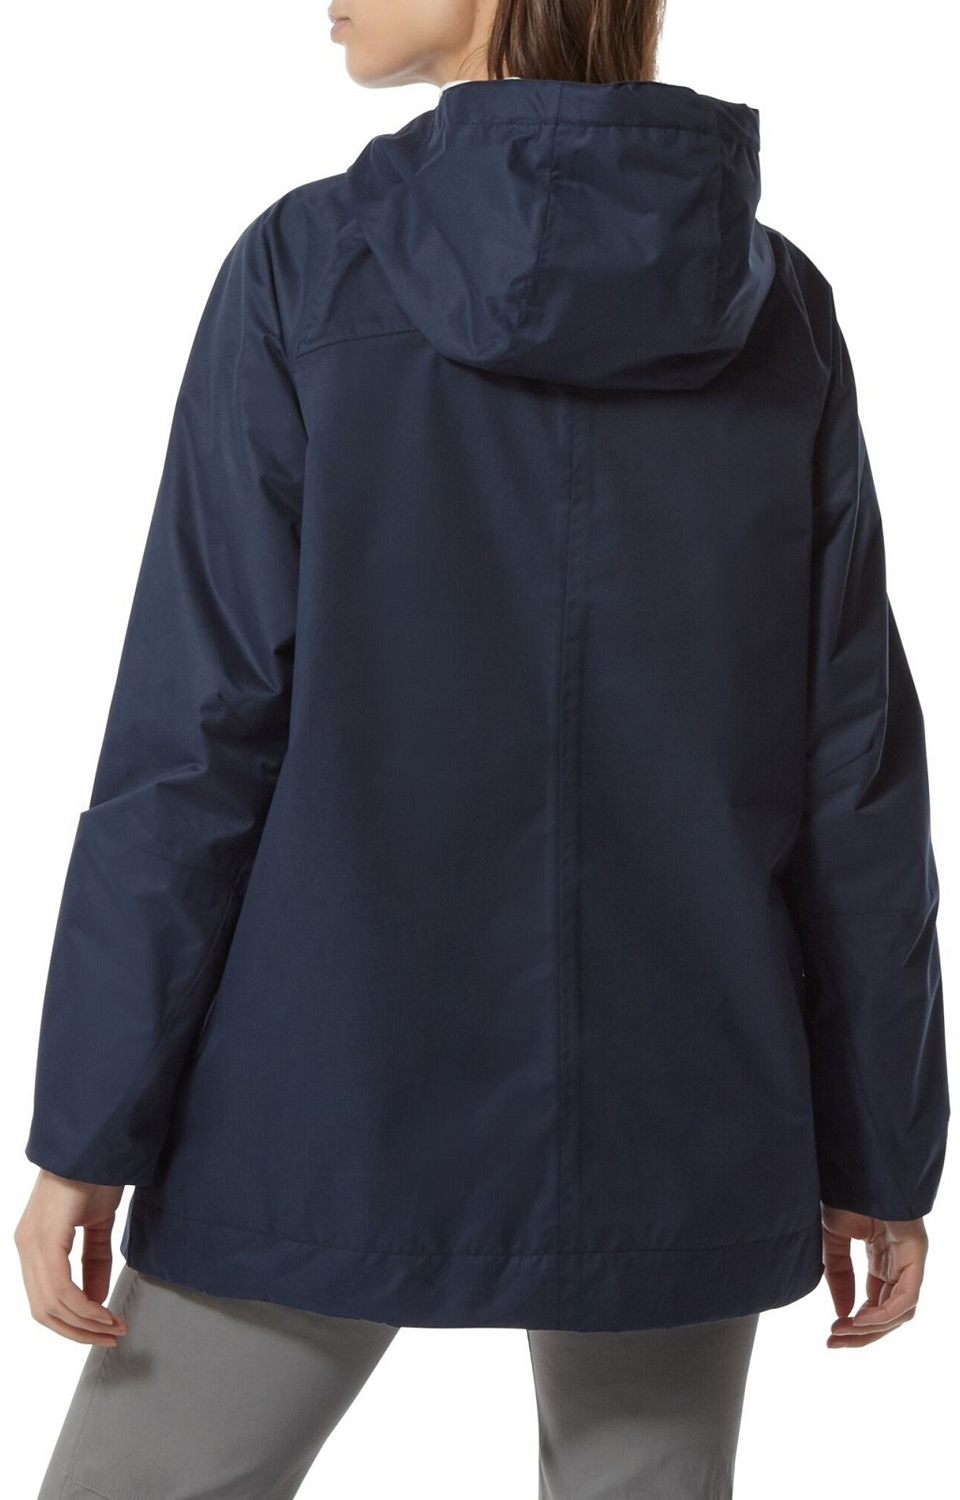 Куртка для активного отдыха Craghoppers Sorrento Blue Navy